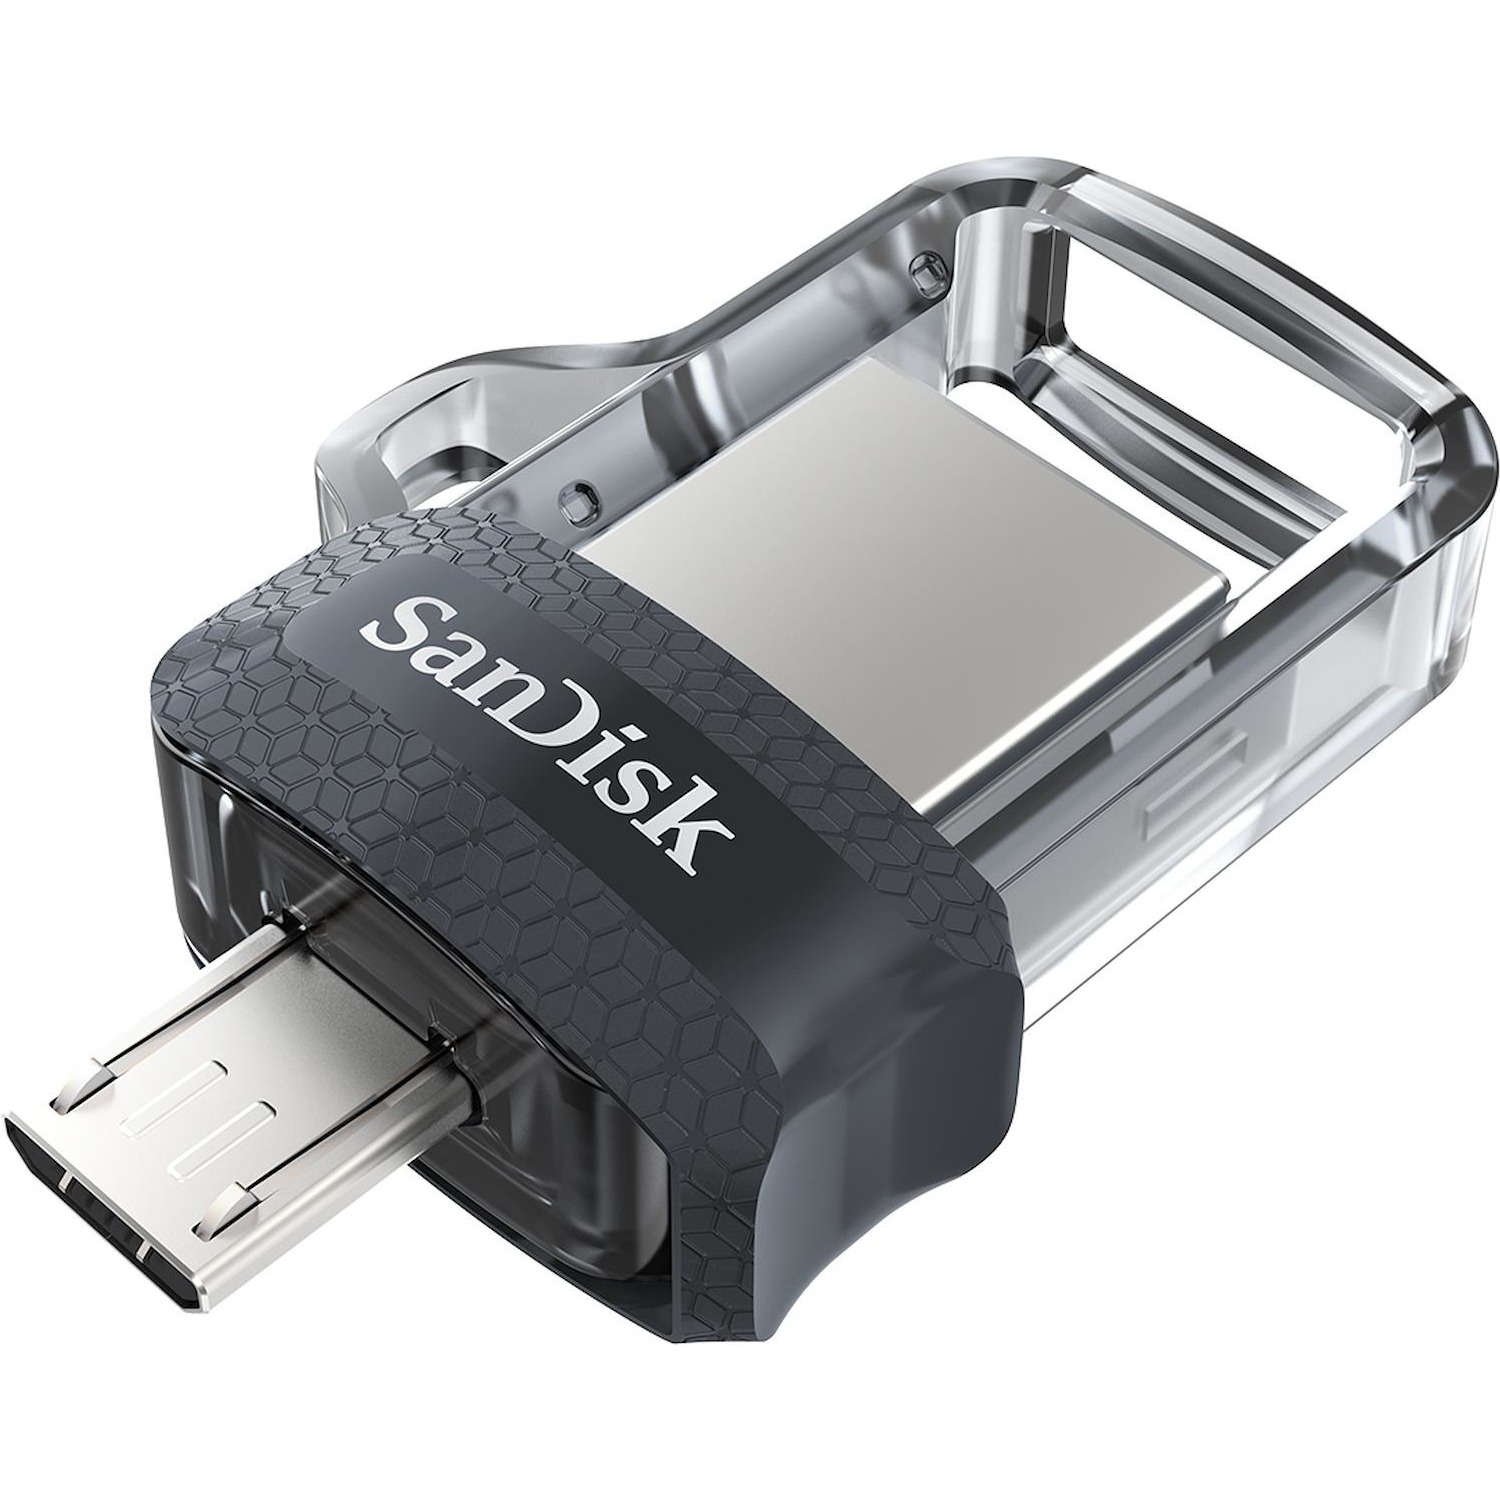 Immagine per Memoria USB San Disk Cruzer Ultra Dual m 3.0 USB  3.0 - Micro USB Android OTG 64GB con Memory Zone da DIMOStore